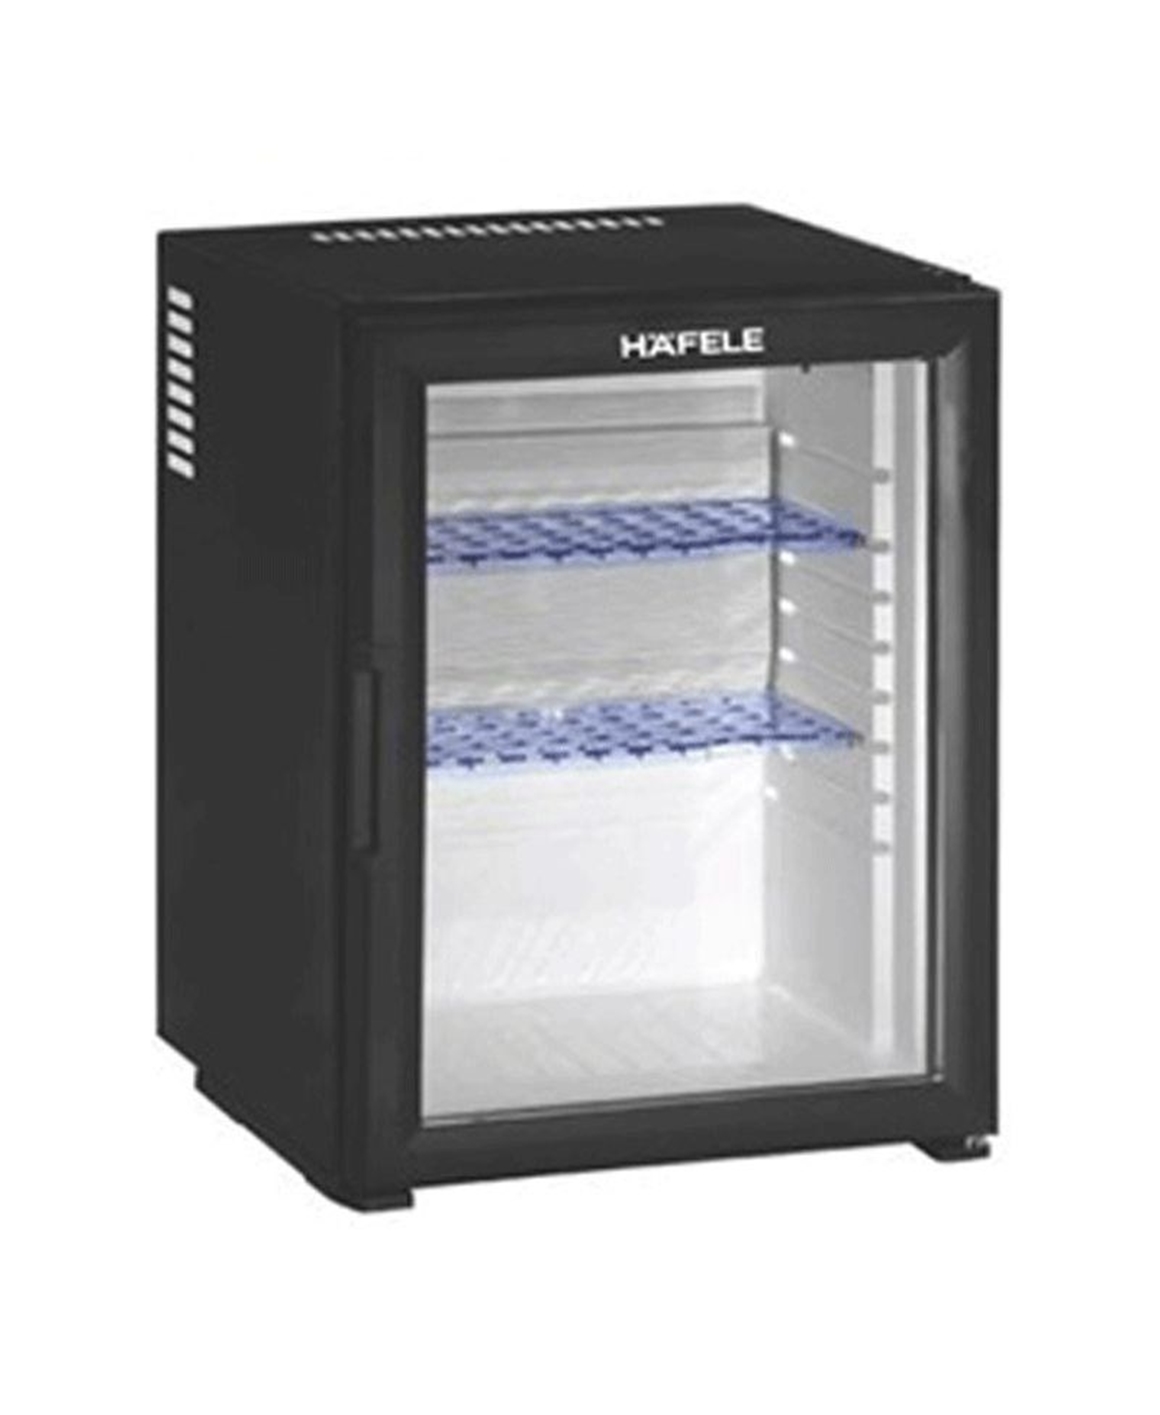 Hình ảnh của Tủ lạnh mini Hafele HF-M30G 536.14.001